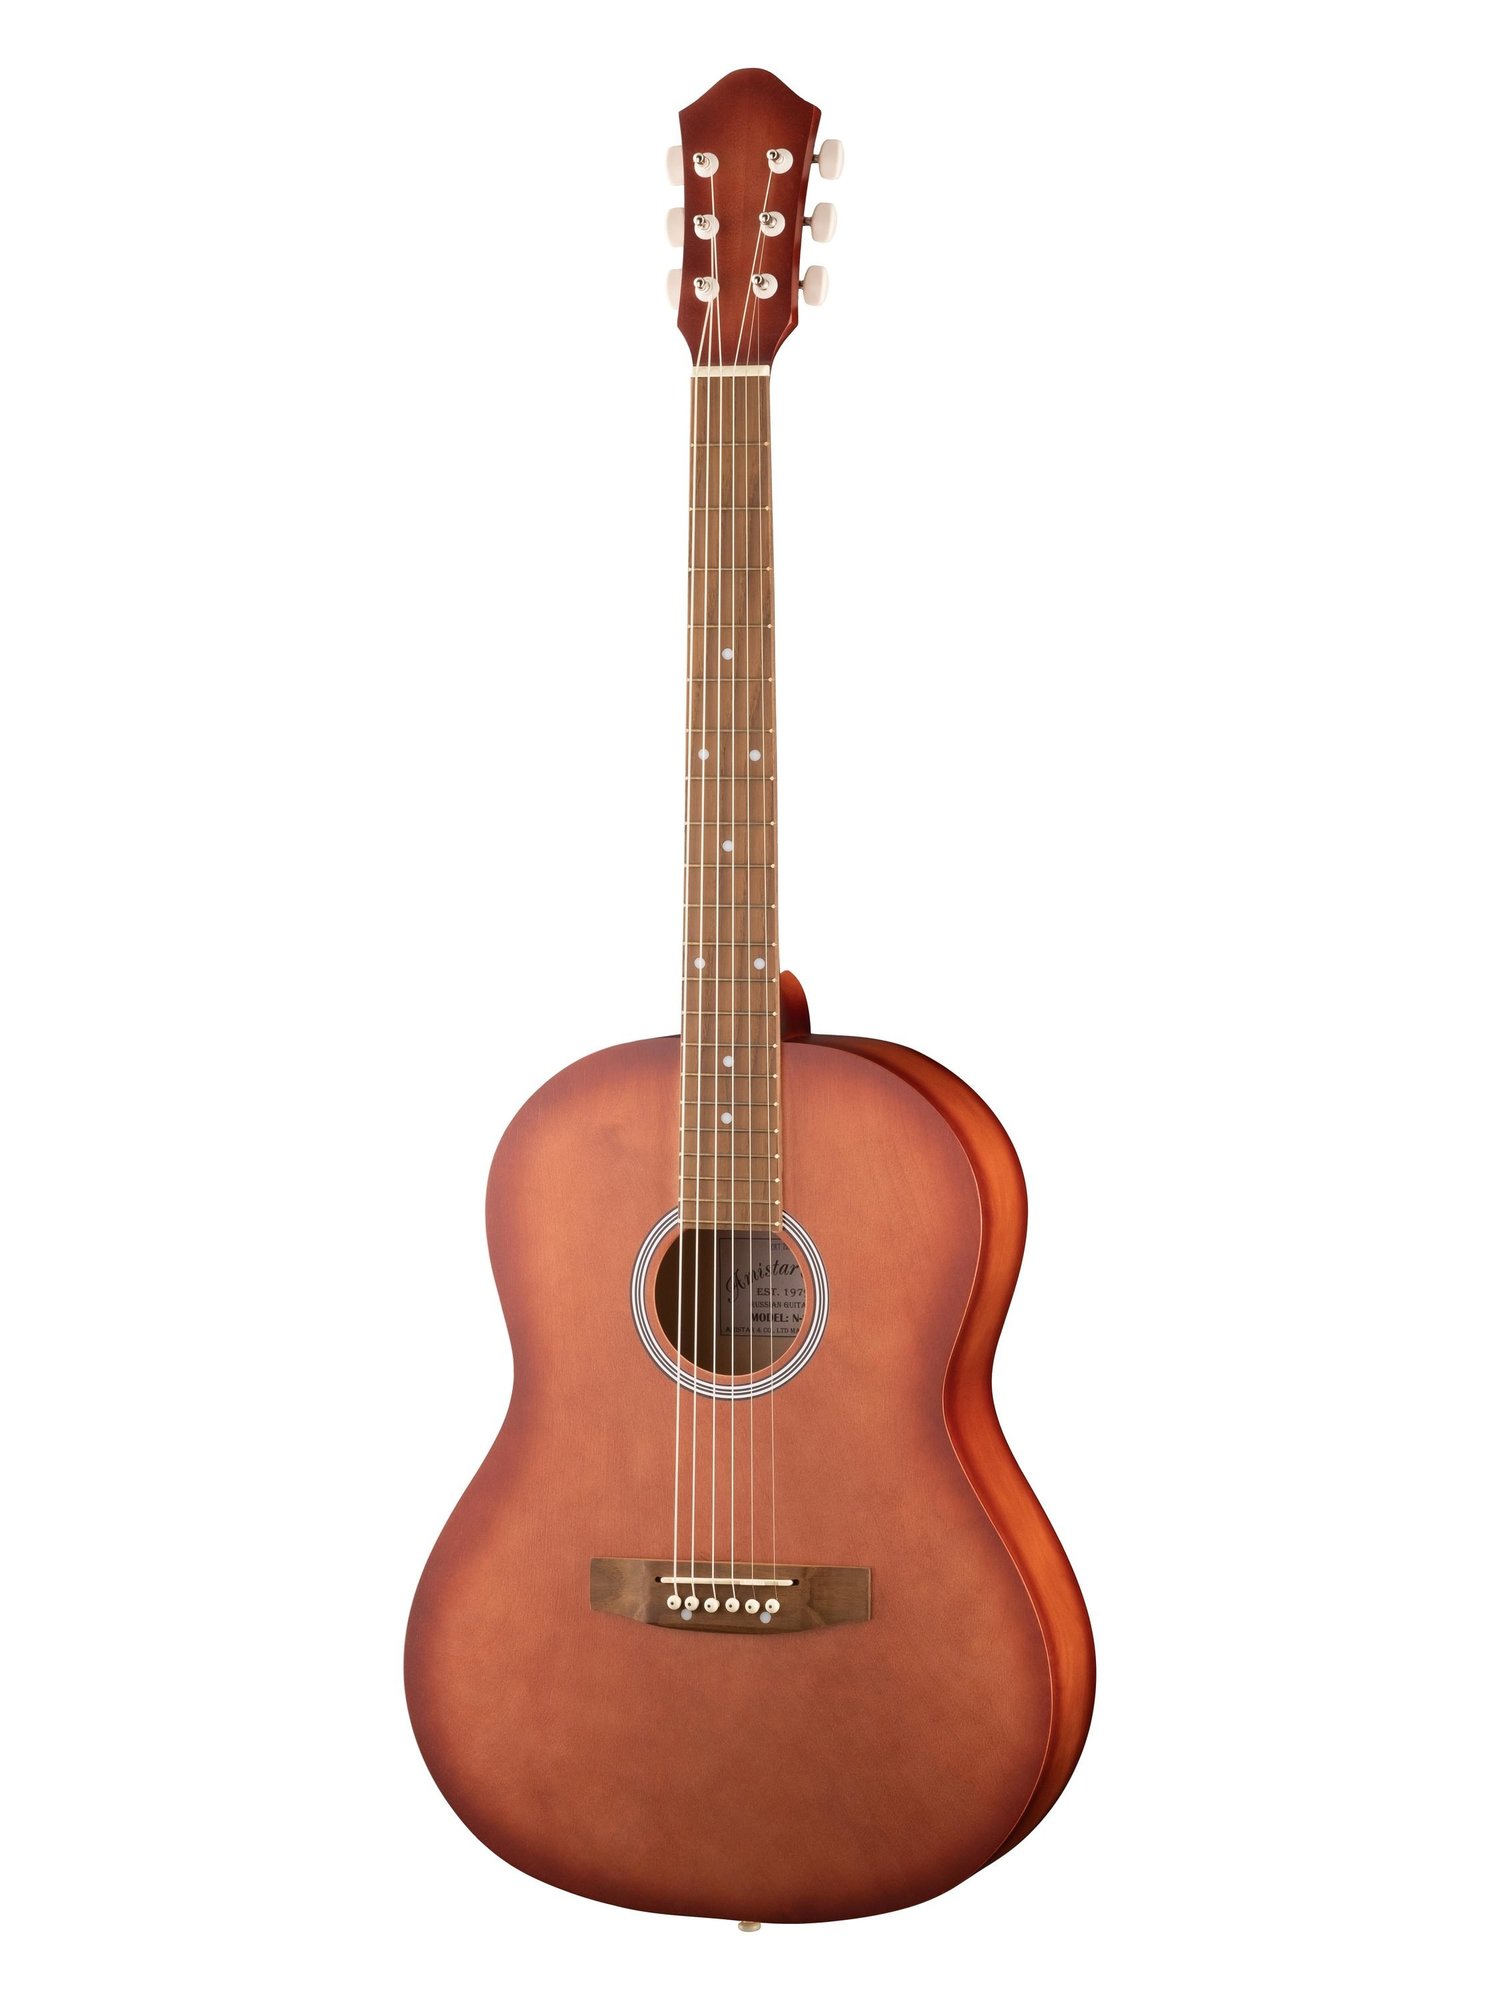 Акустические гитары Амистар M-20-MH гитарные медиаторы разной толщины аксессуары для гитары аксессуары для музыкальных инструментов 0 5 0 75 1 0 мм медиаторы